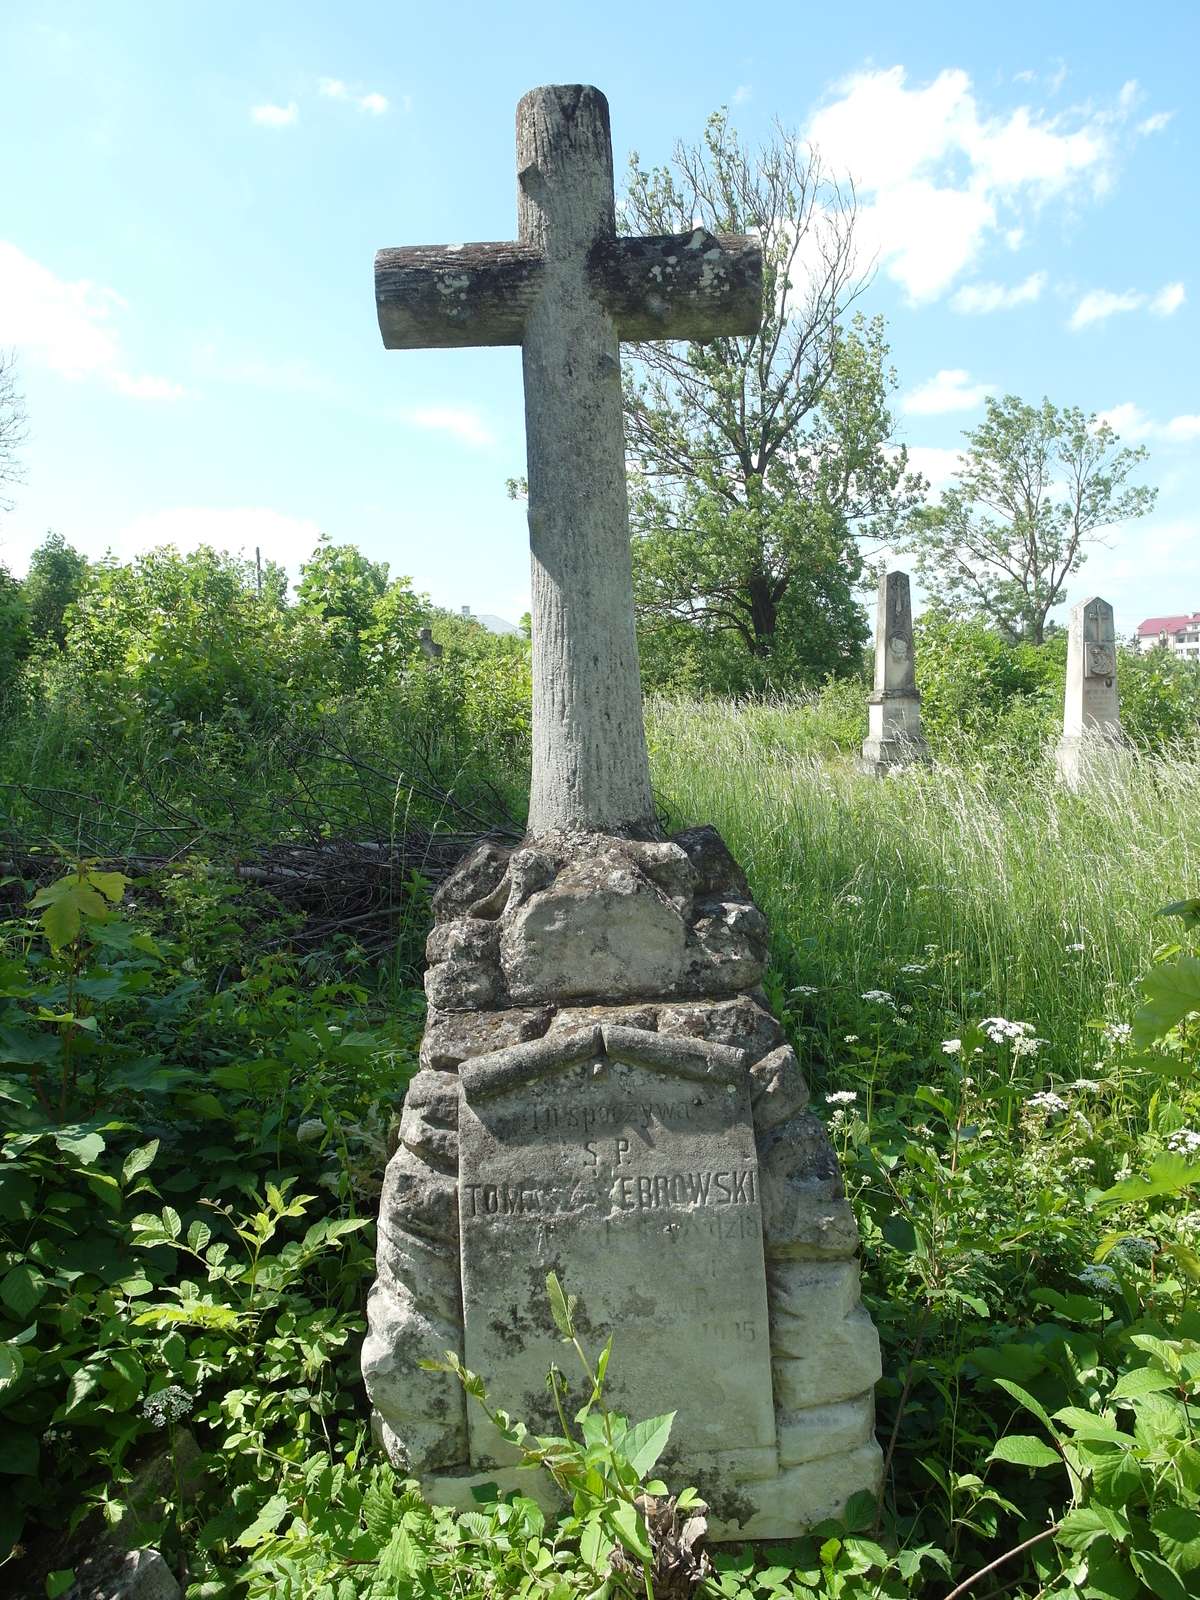 Nagrobek Tomasza Żebrowskiego, cmentarz w Zbarażu, stan z 2018 r.